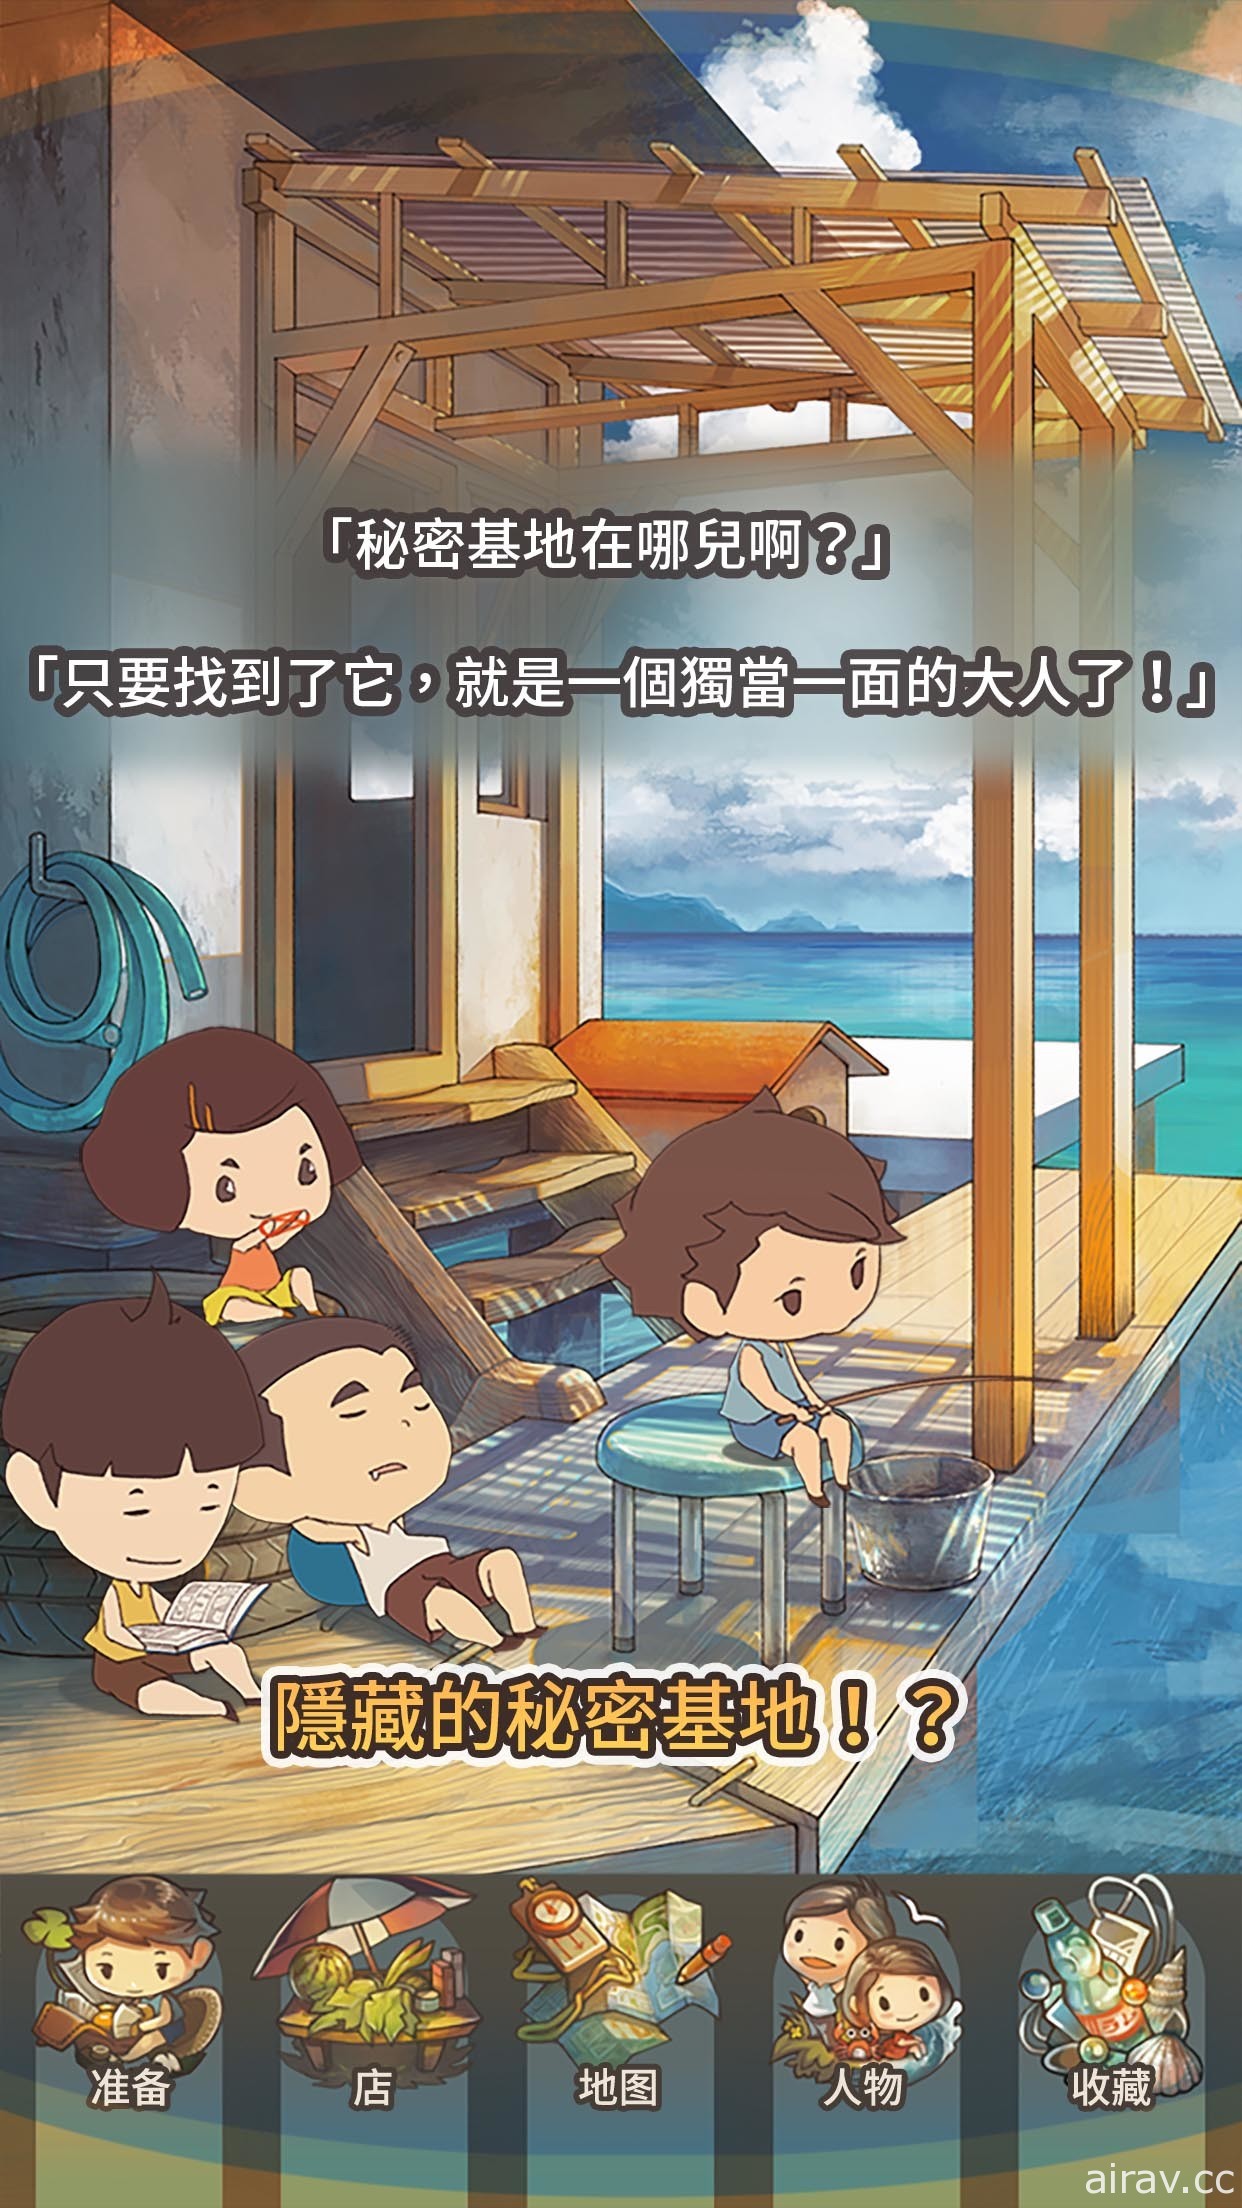 《那年的暑假～感動人心的昭和系列～》正式推出 回到懷舊昭和時代悠閒體驗暑假